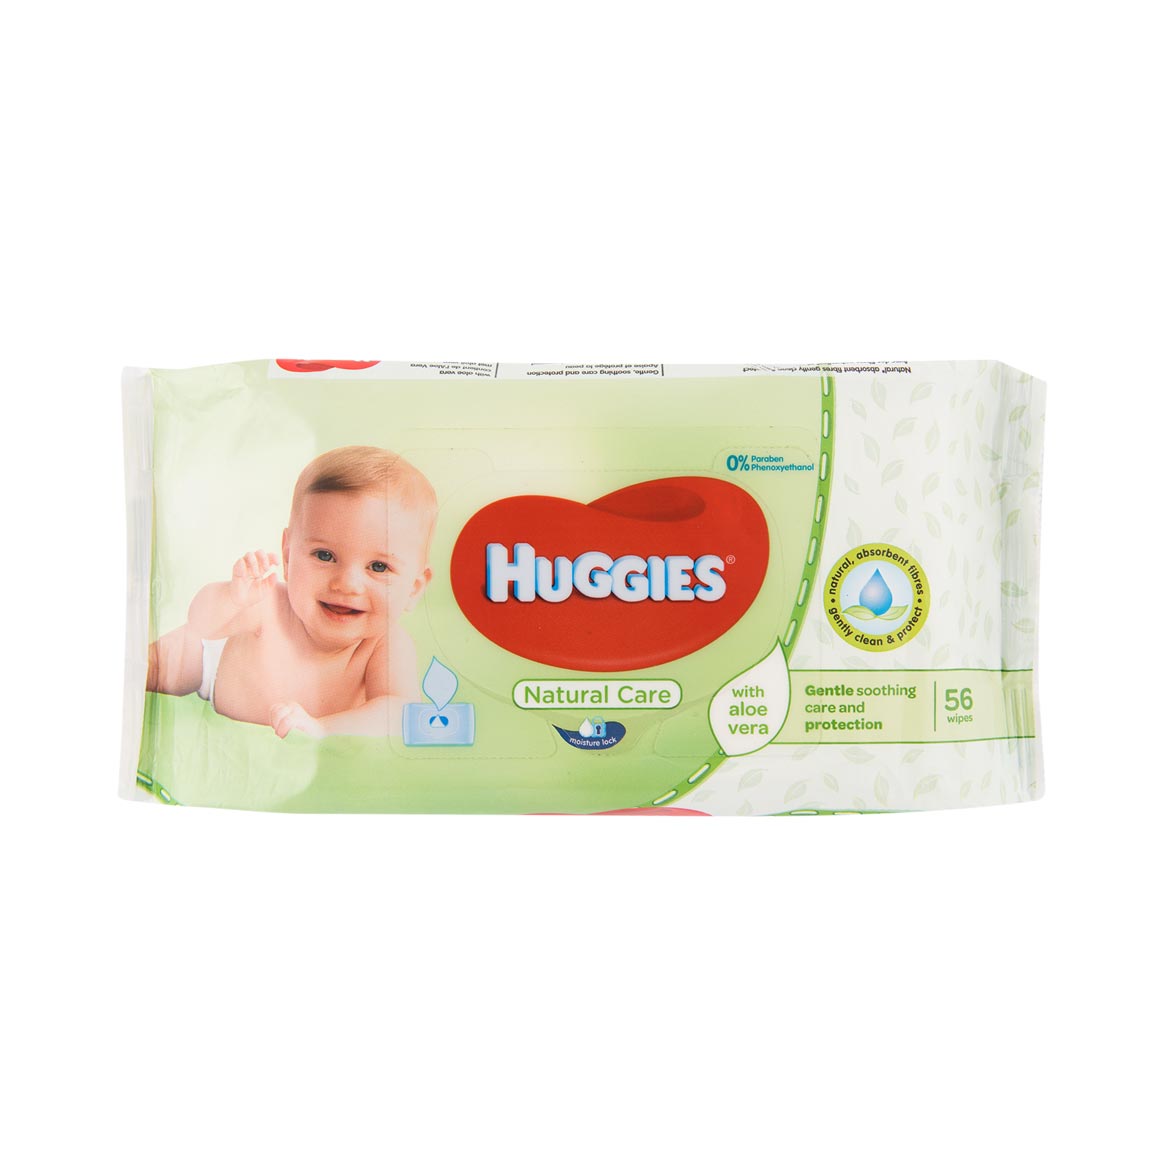 woolworths huggies baby wipes